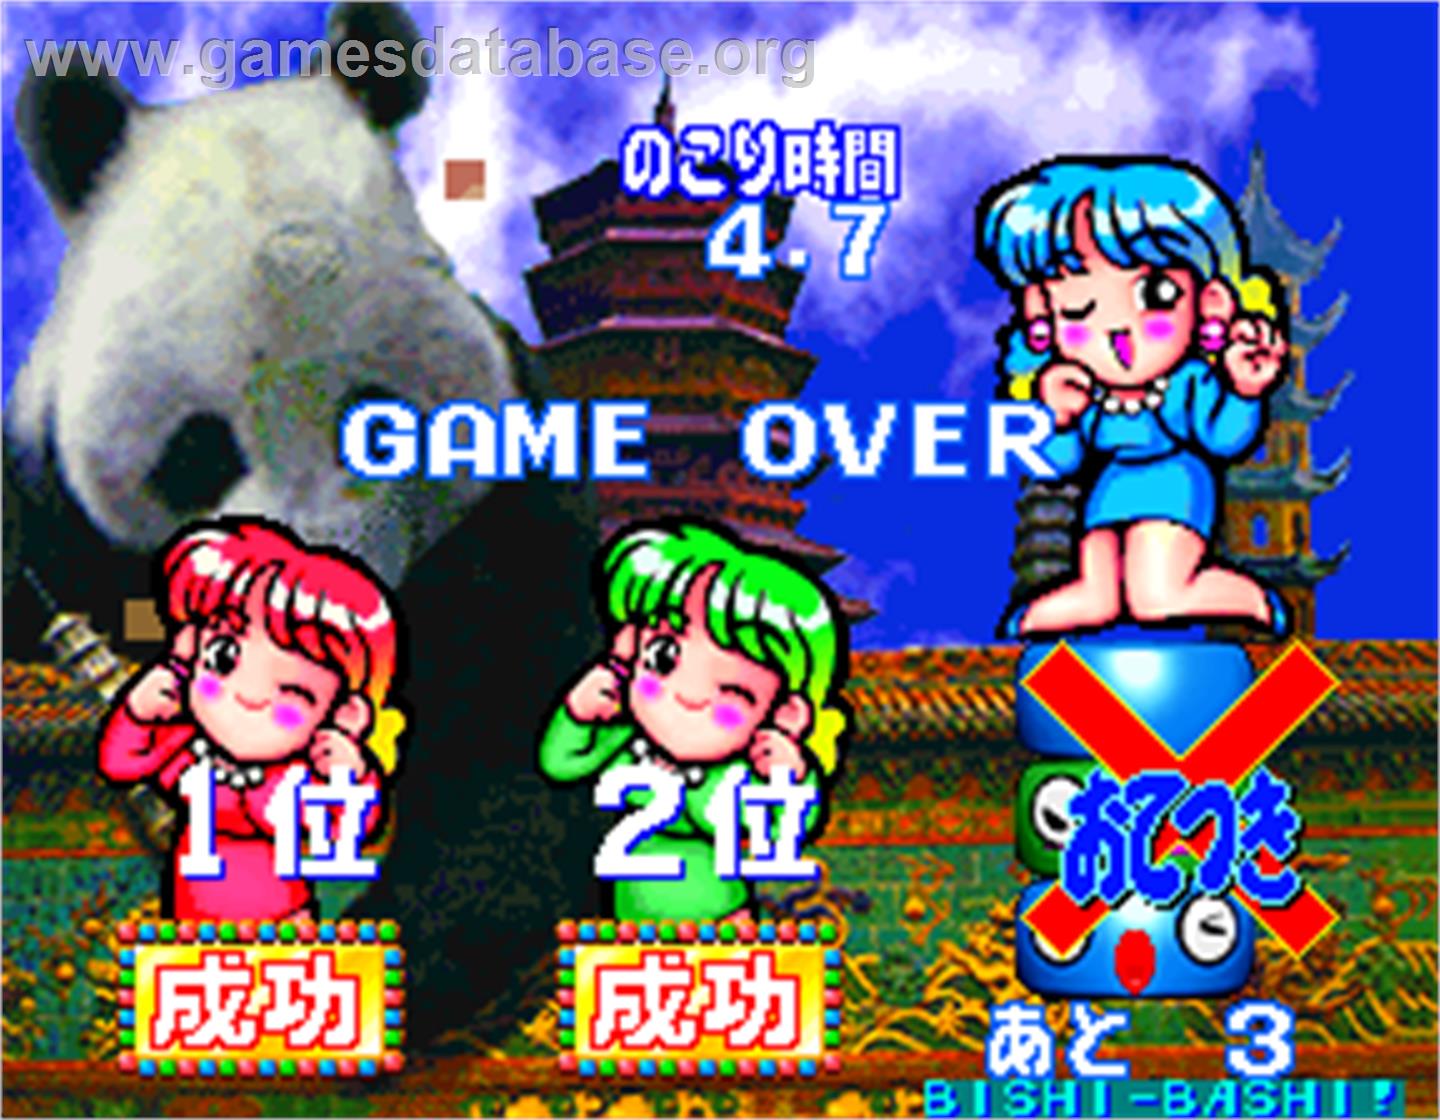 Bishi Bashi Championship Mini Game Senshuken - Arcade - Artwork - Game Over Screen